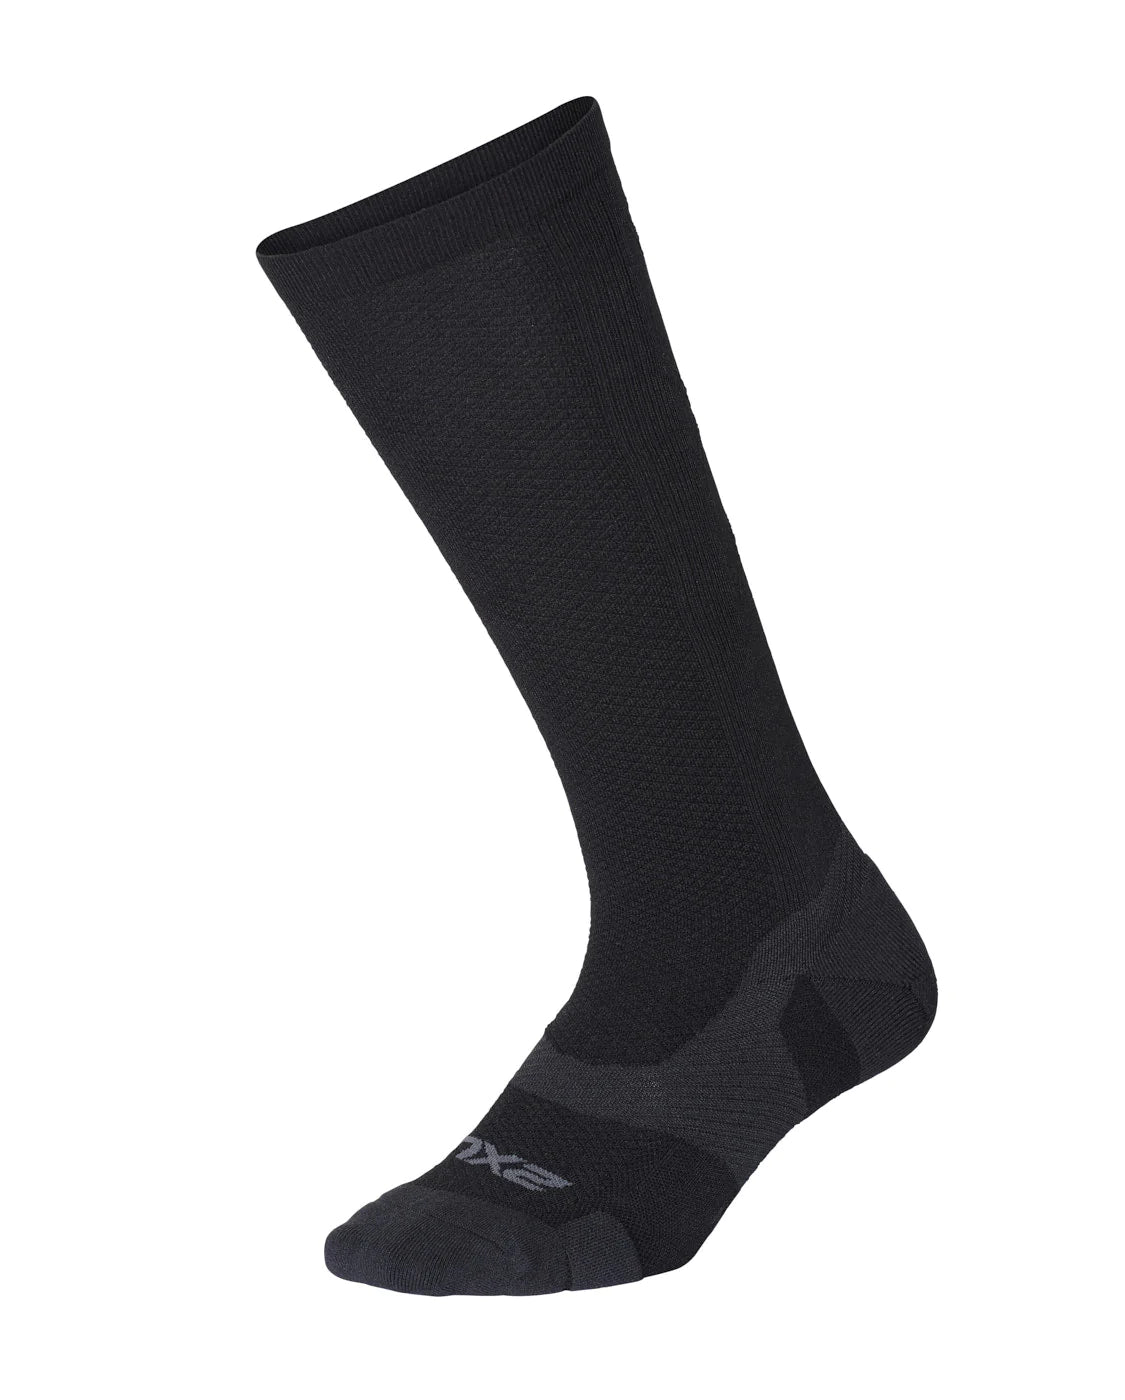 2XU VECTR L.Cush Full Length Socks, Black/Titan